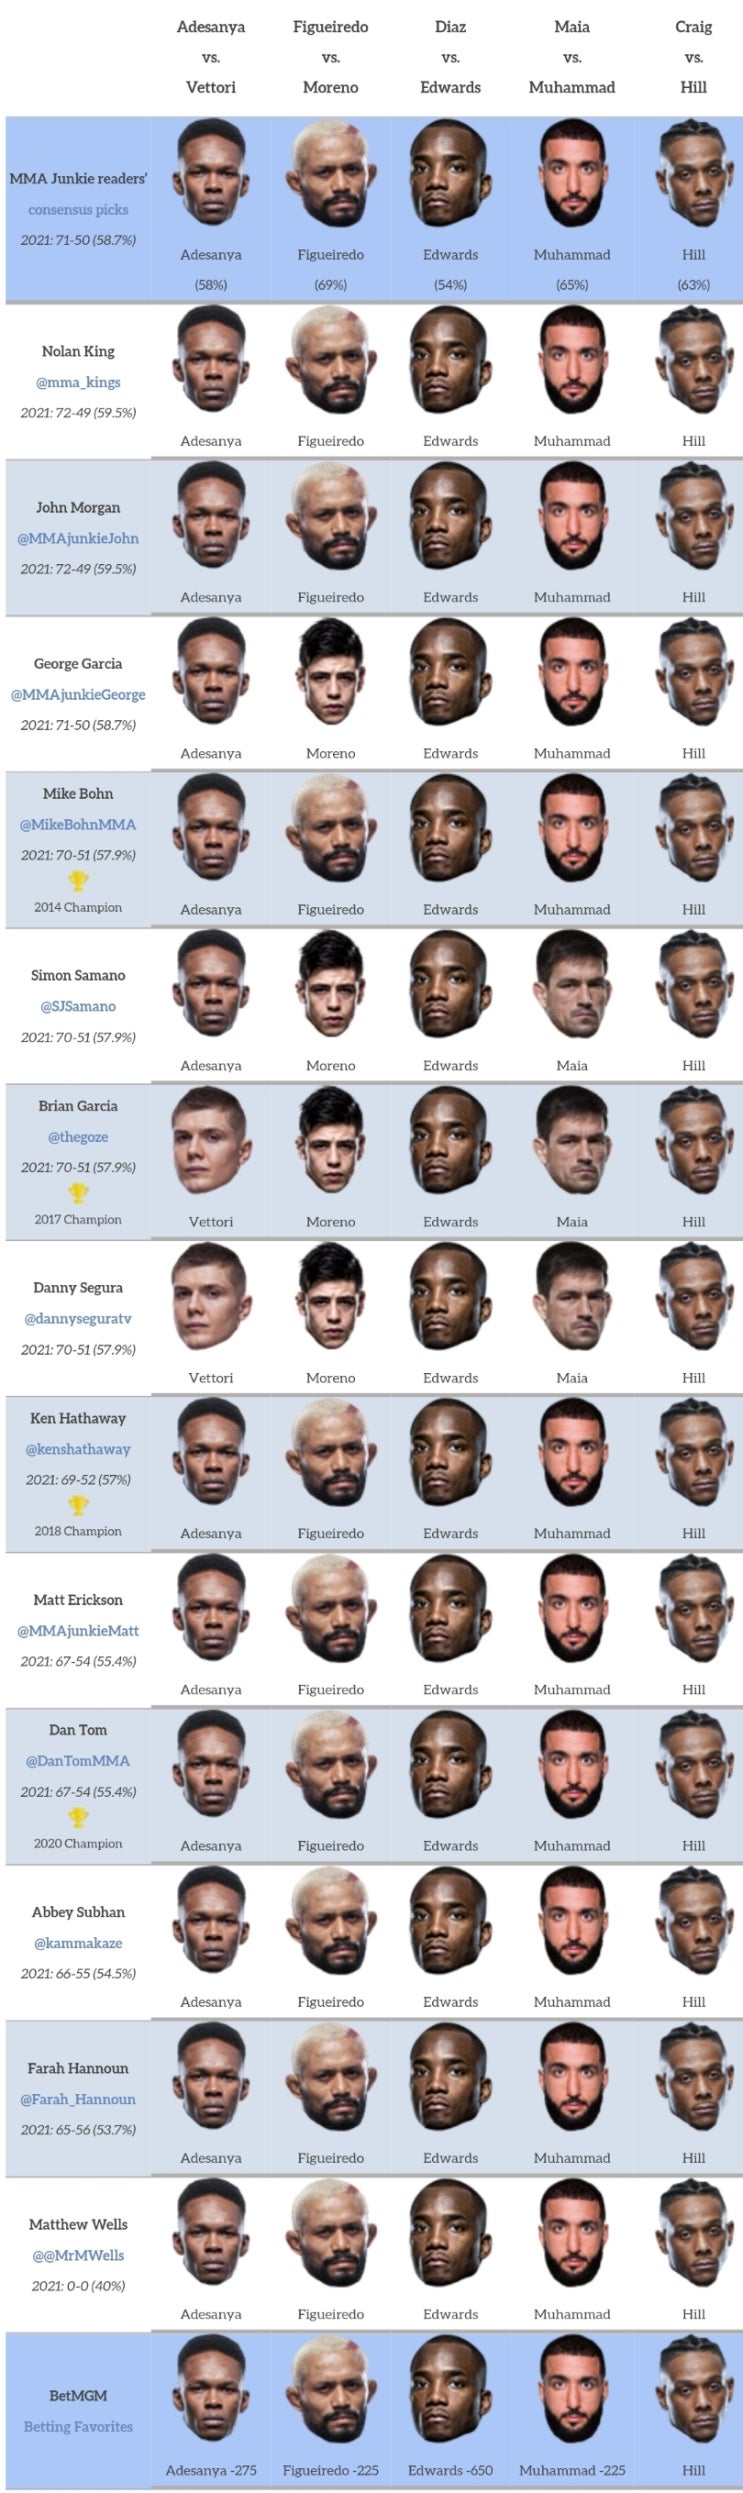 UFC 263: 아데사냐 vs 베토리 프리뷰(미디어 예상 및 배당률) - 미들급에선 가장 난적